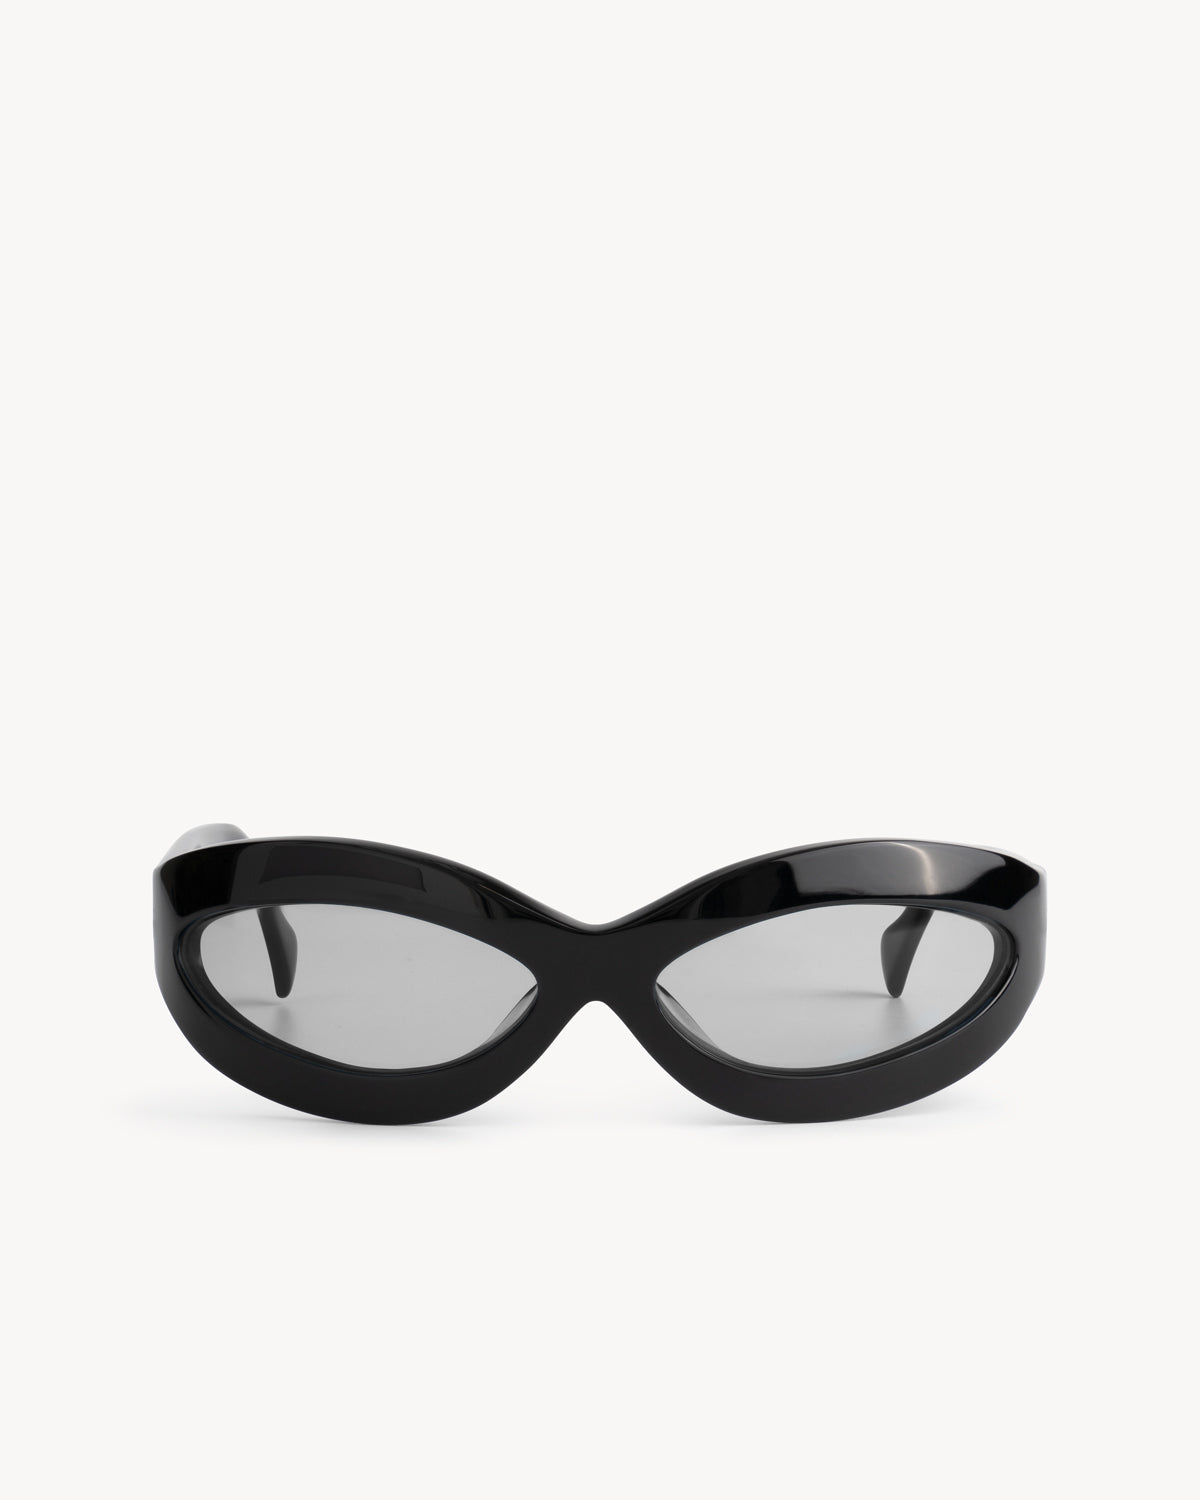 Port Tanger Summa Sunglasses in Black Acetate and Black Lenses 1